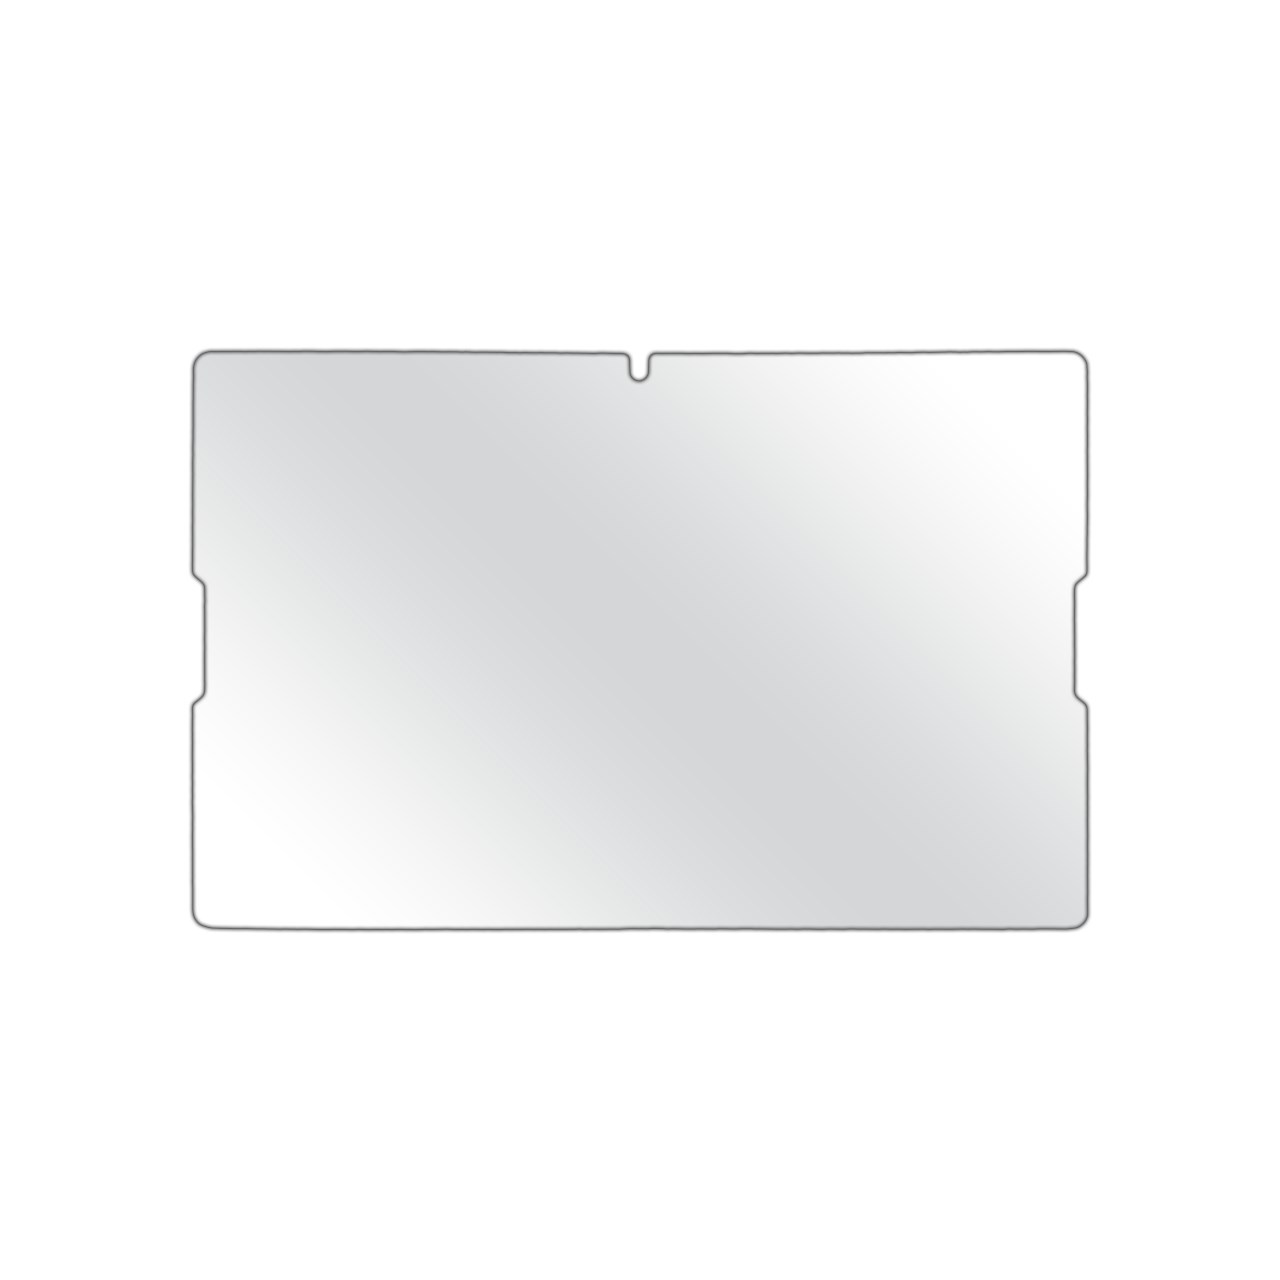 تصویر محافظ صفحه نمایش مولتی نانو مناسب برای تبلت لنوو ای 7600 / ای 10